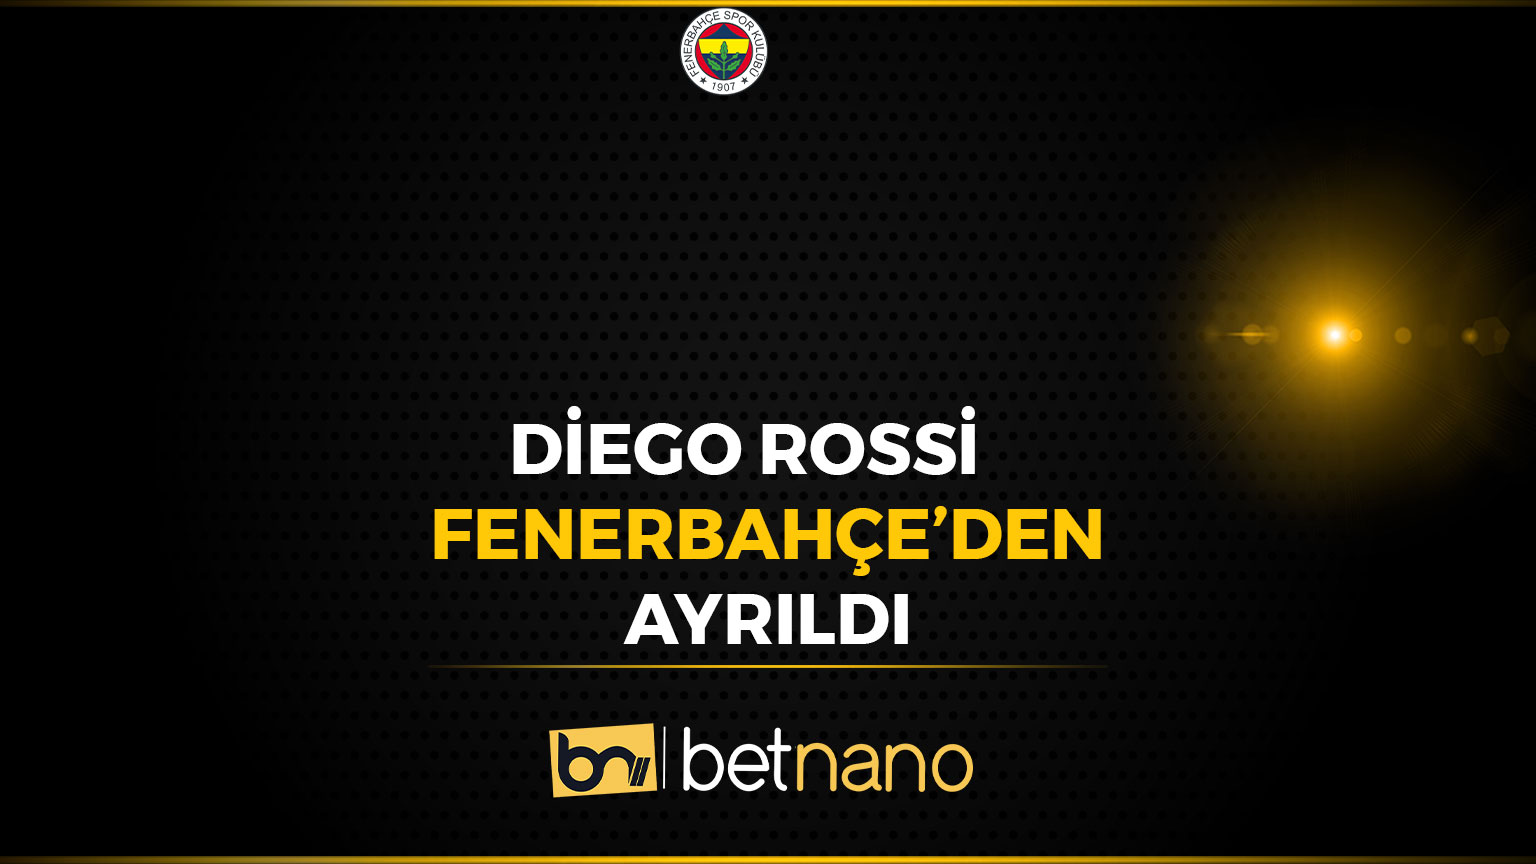 Diego Rossi Fenerbahçe'den Ayrıldı!